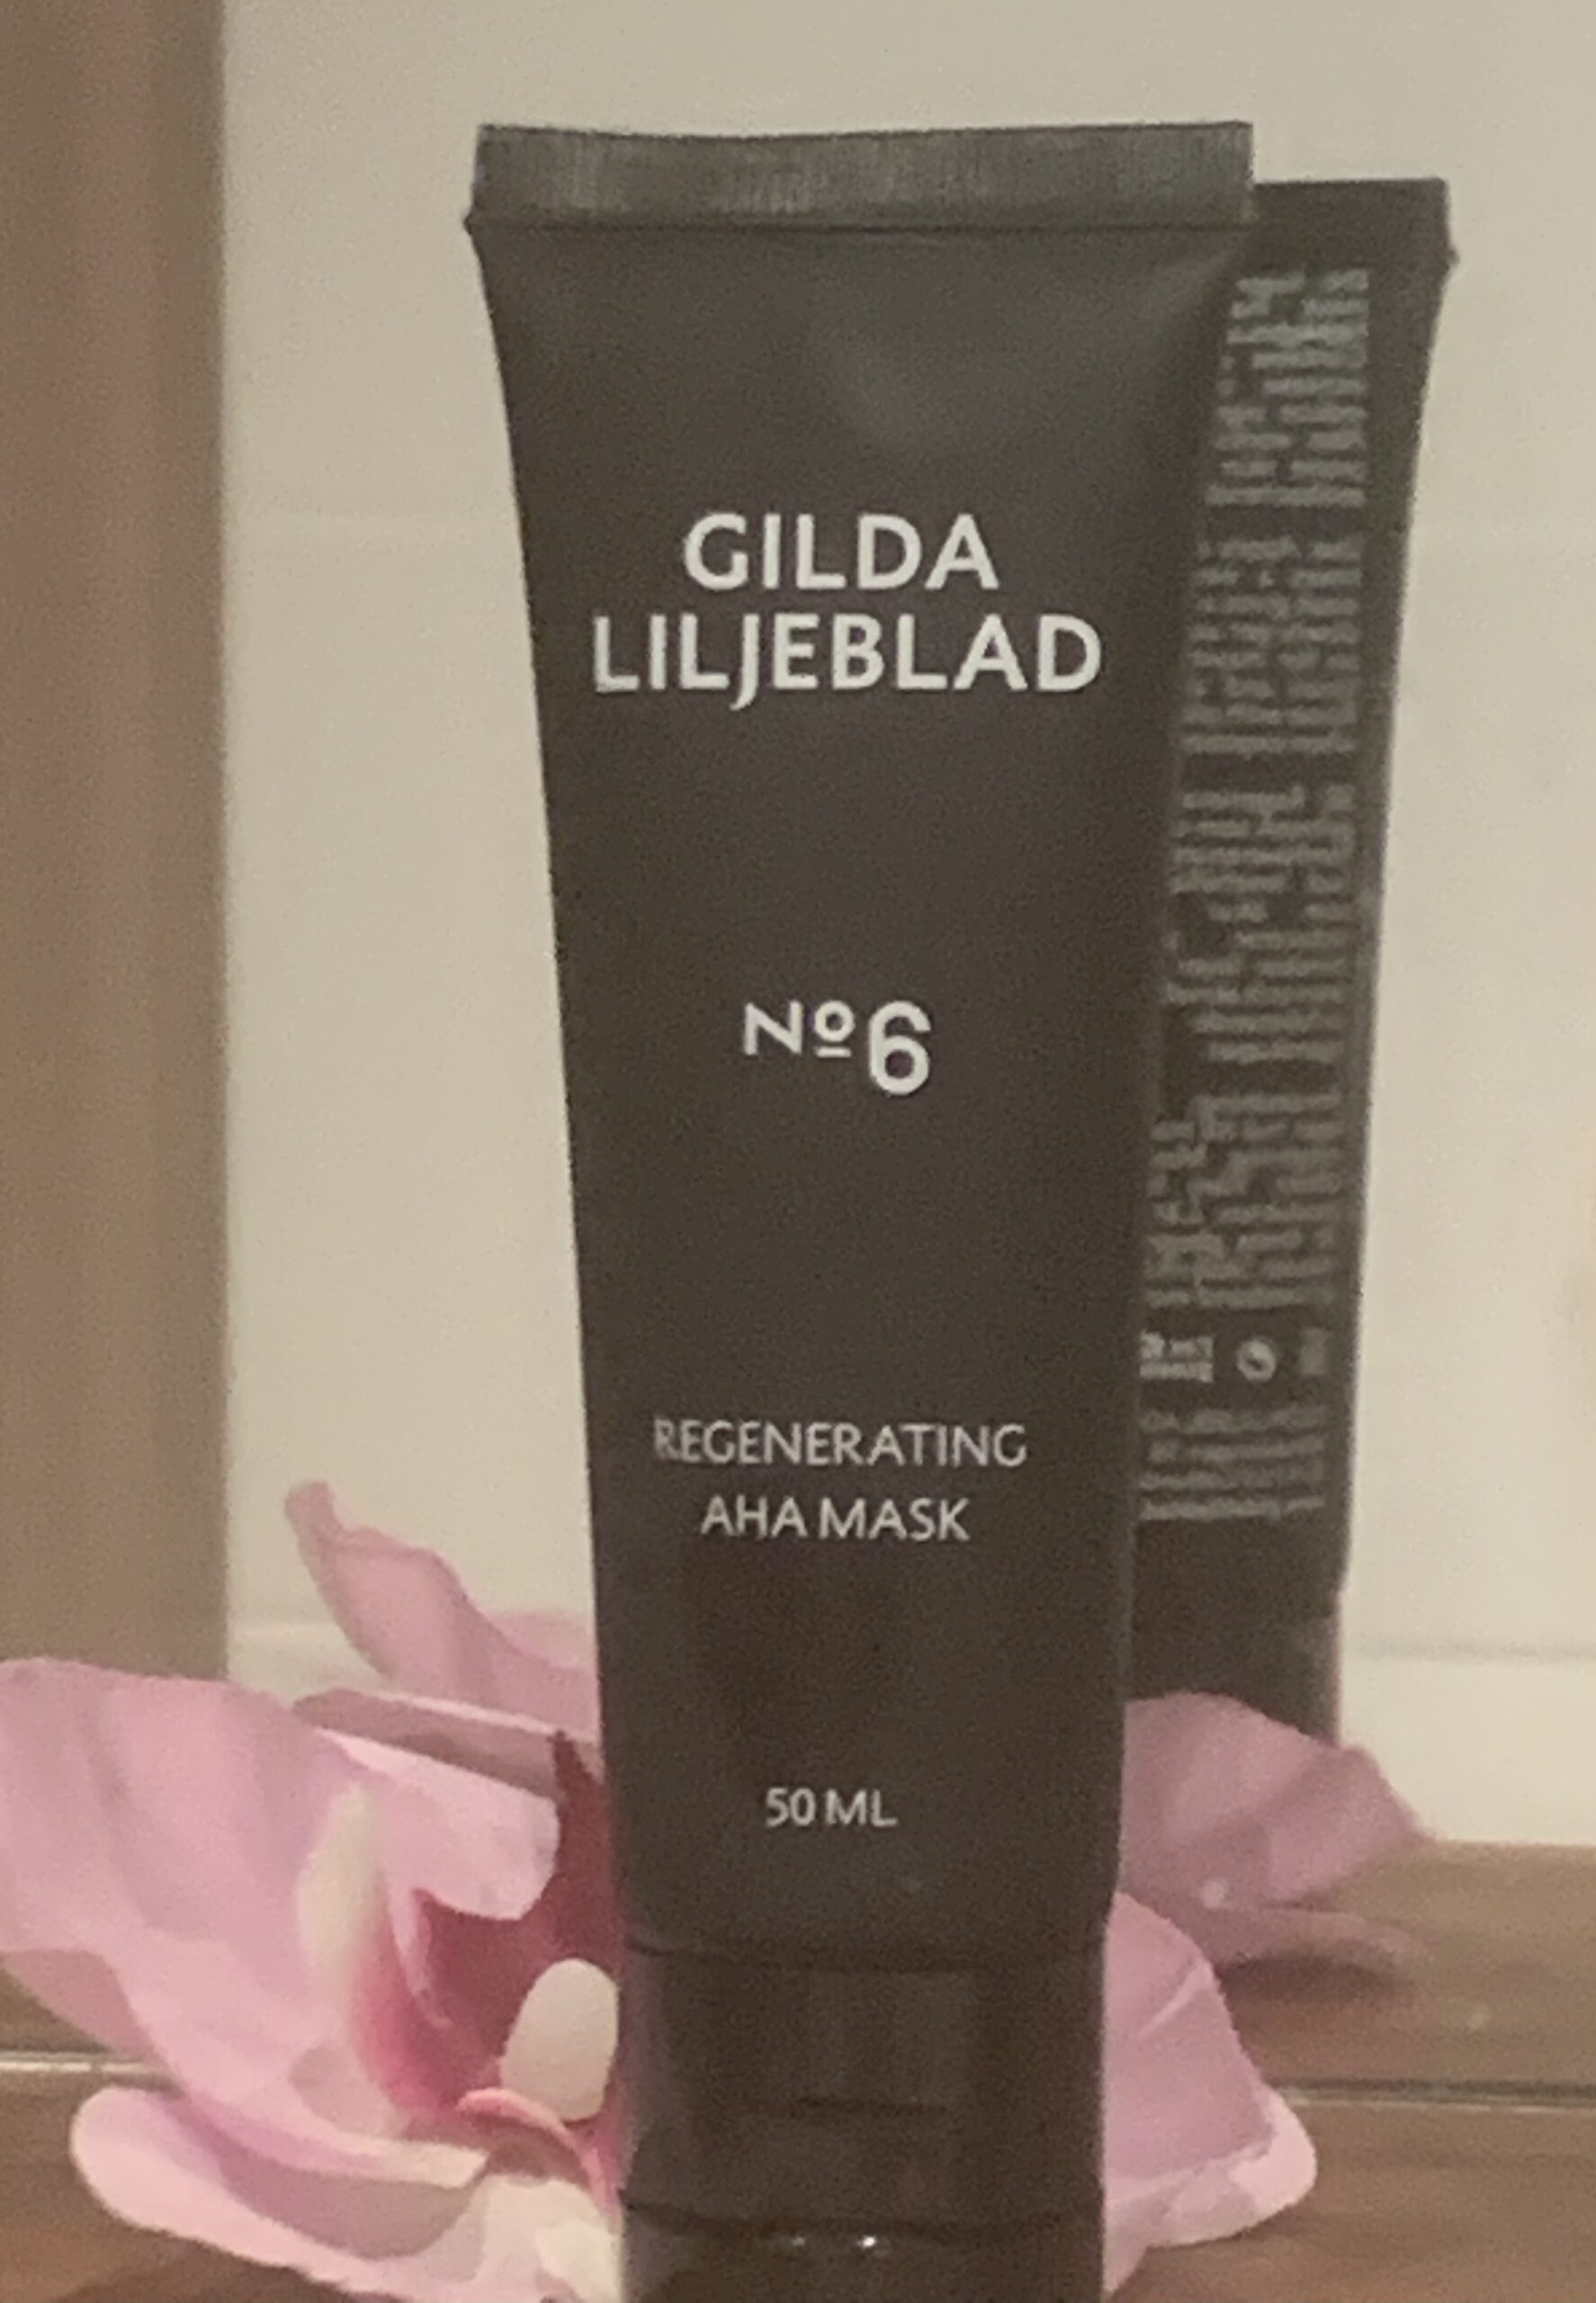 Gilda Liljeblad Regenerating AHA mask